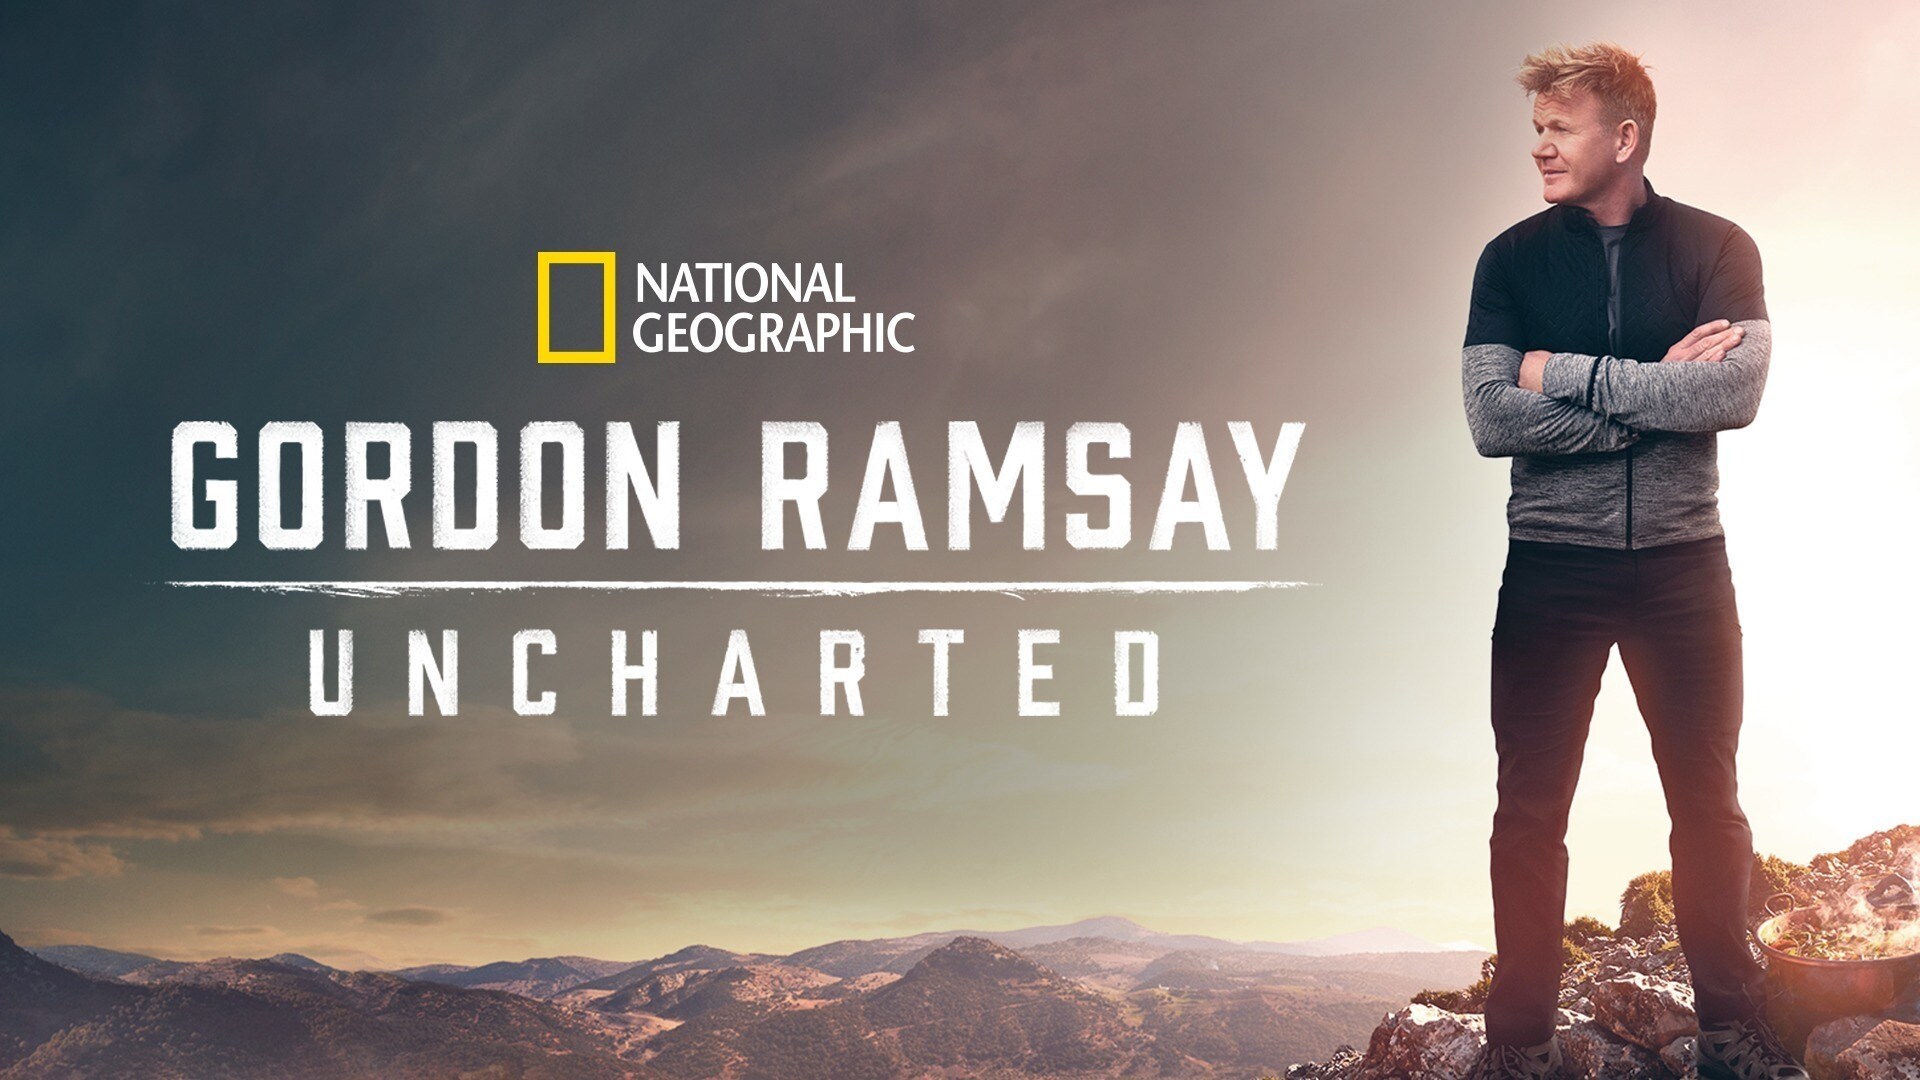 Gordan Ramsay: Uncharted